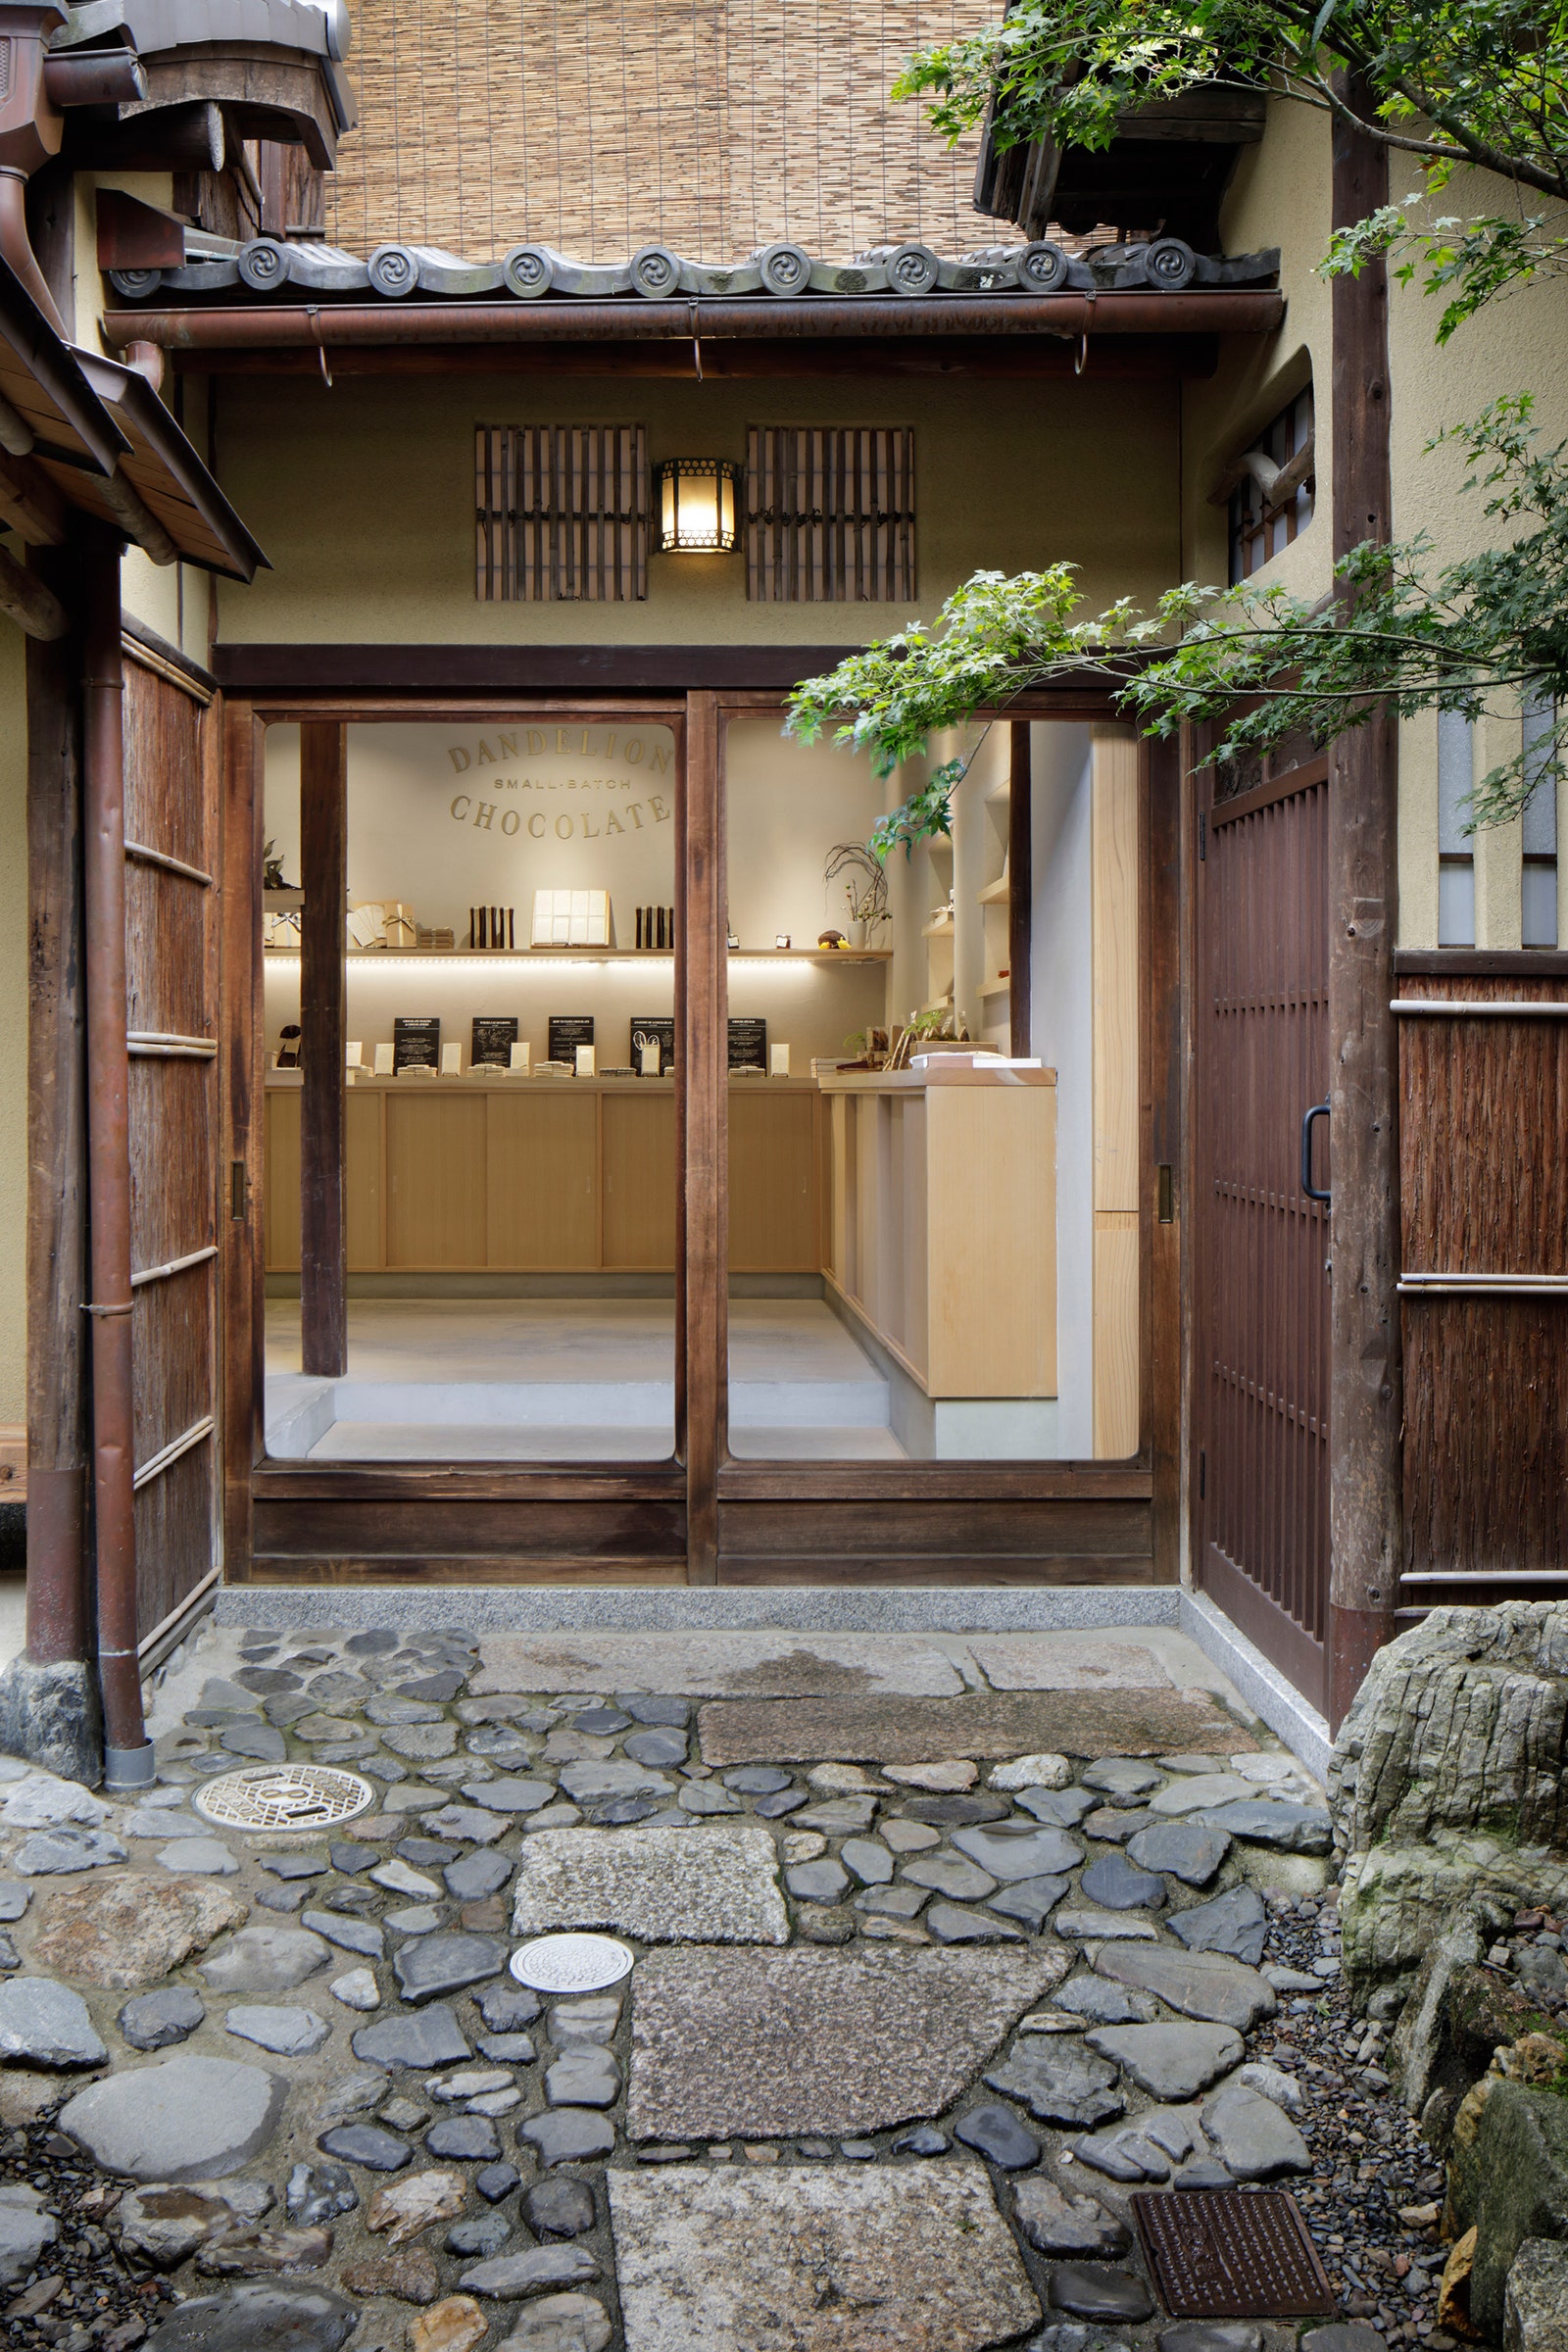 Деревянная отделка в интерьере кафе Dandelion Chocolate в Киото